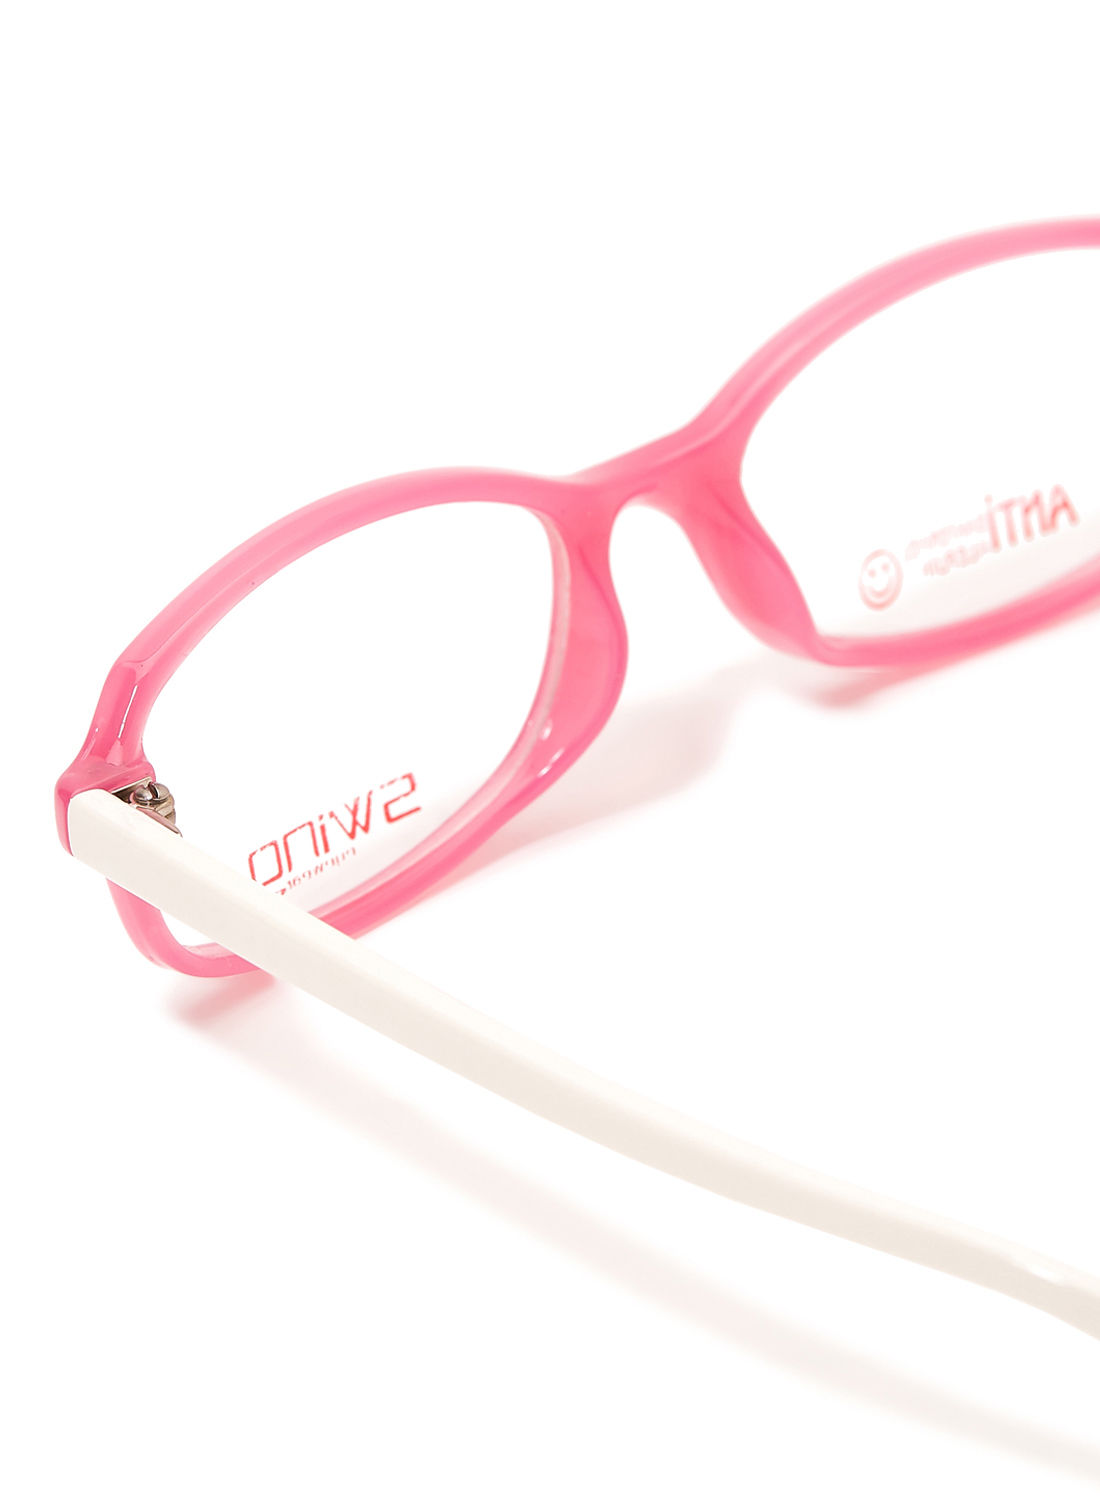 Women's Rectangular Eyeglasses Frame